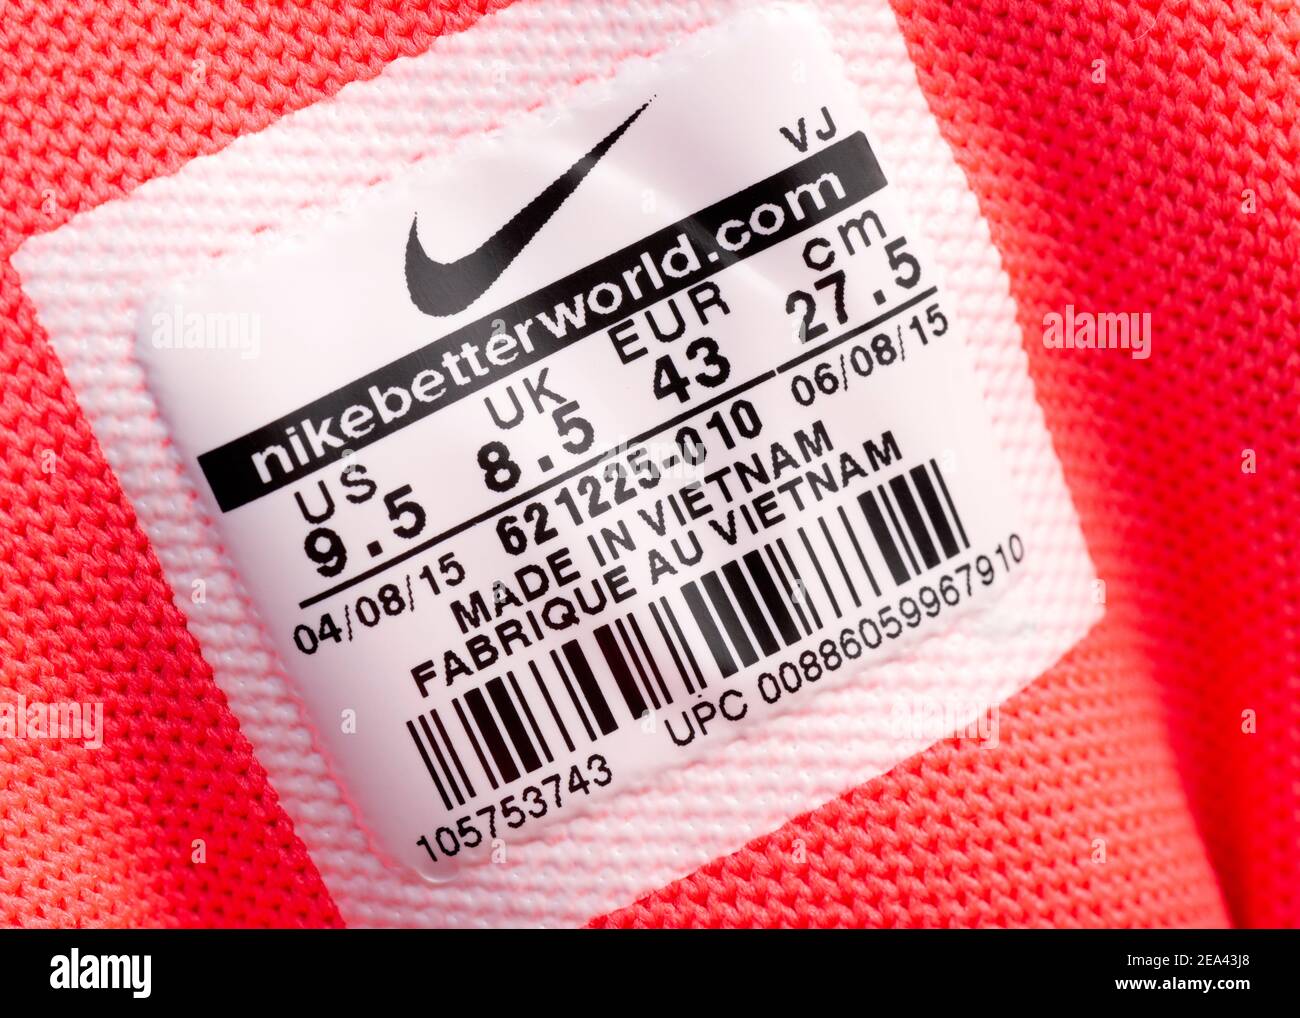 Nike label logo immagini e fotografie stock ad alta risoluzione - Alamy